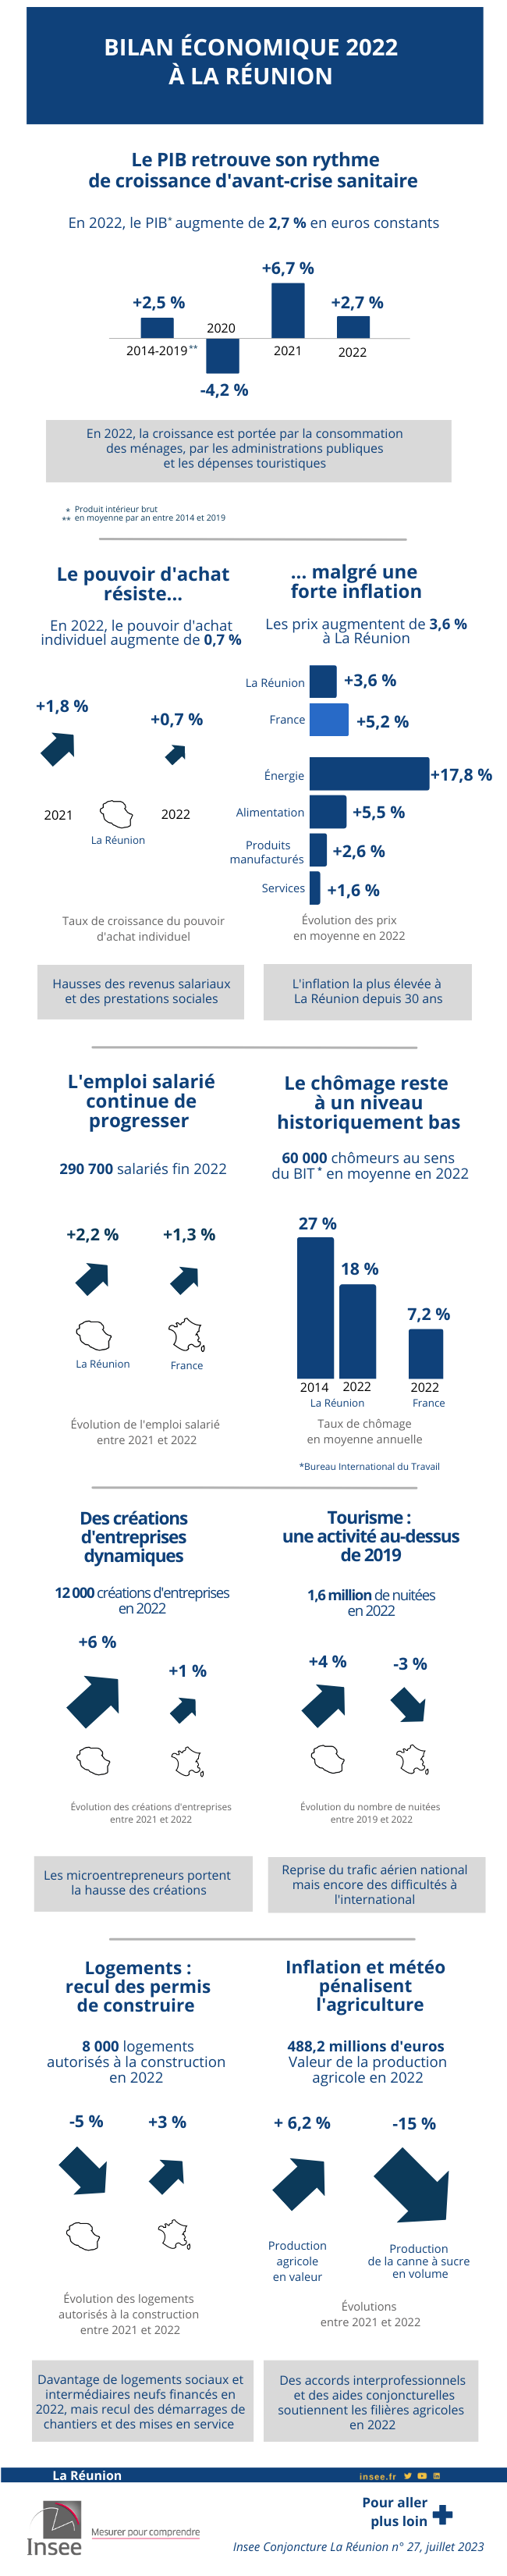 Bilan économique 2022 de La Réunion.